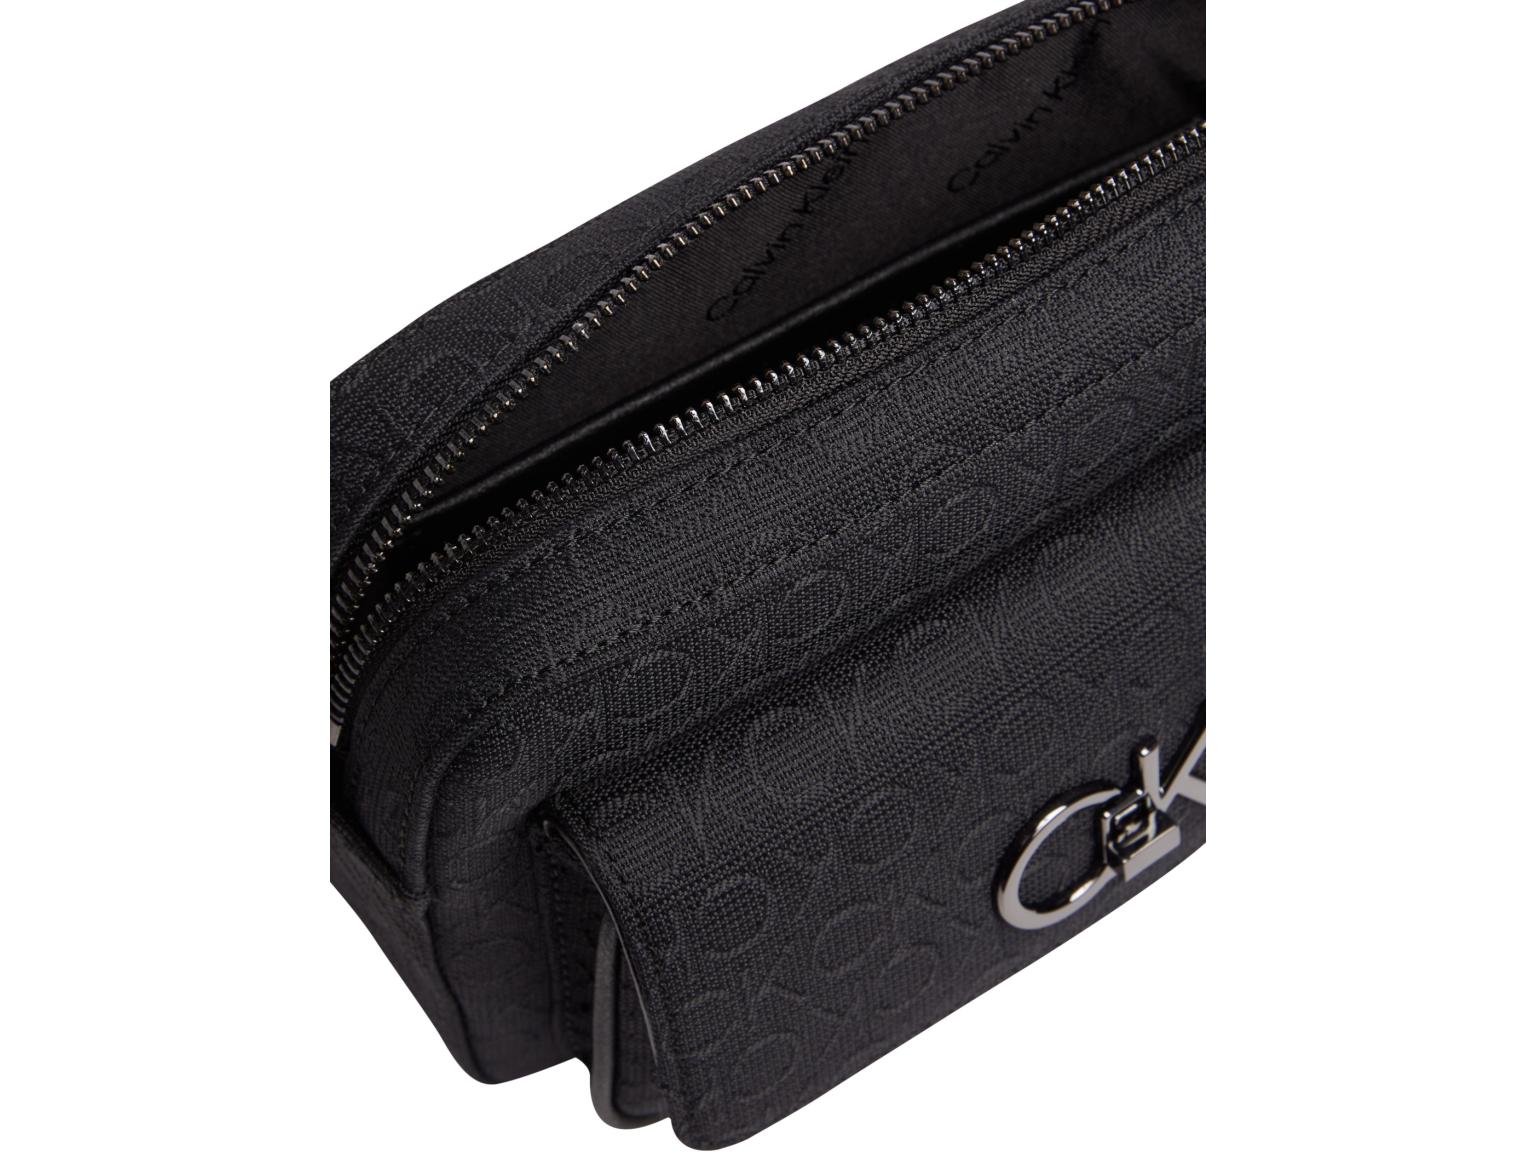 Calvin Klein Jacqard Crossovertasche Re-Lock Camera Bag schwarz